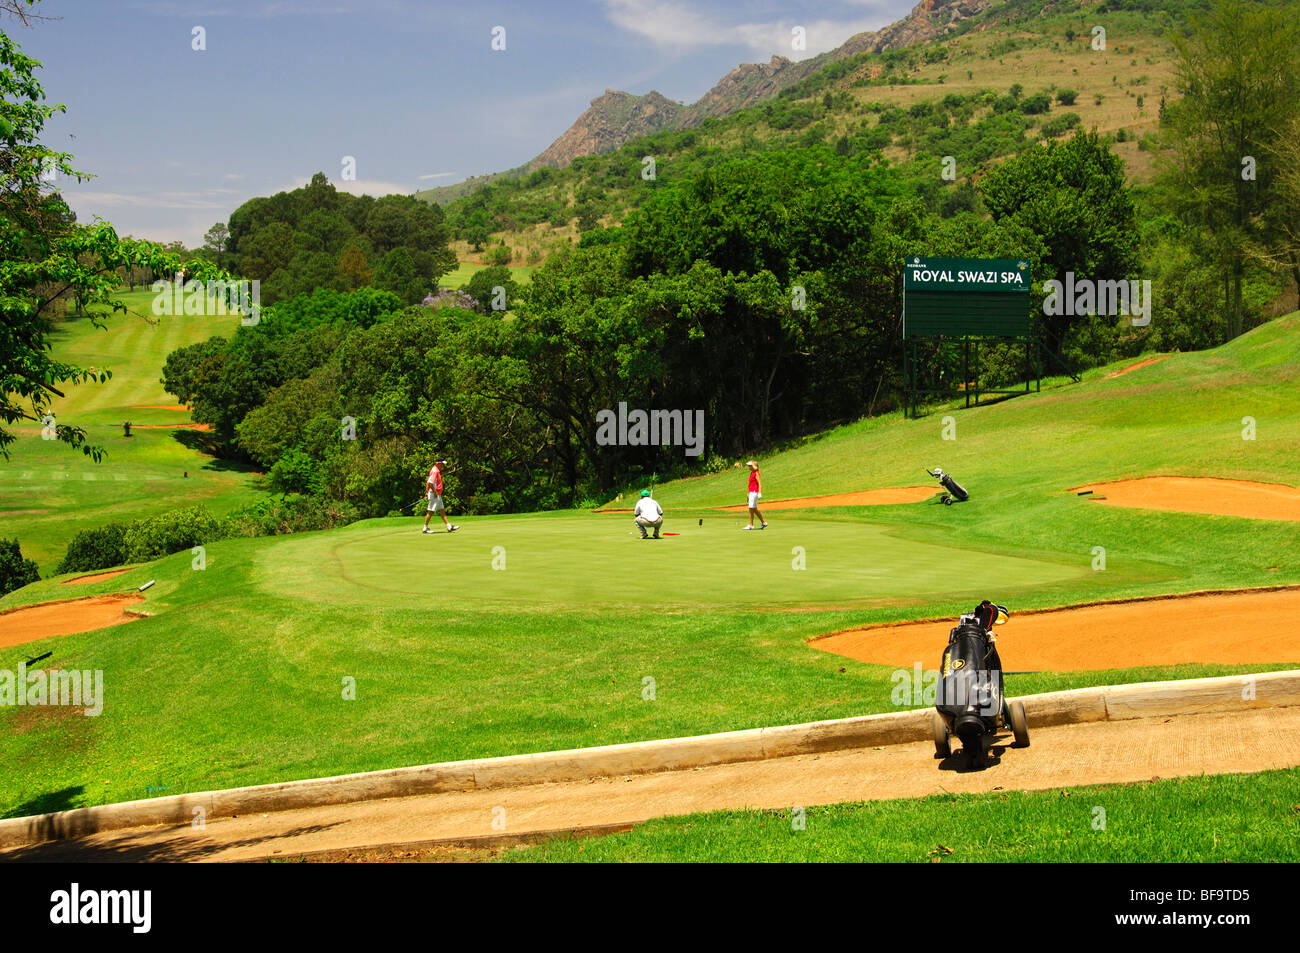 Campo de golf de 18 hoyos de la Royal Swazi Ezulwini Valley Resort, Spa, Suazilandia Foto de stock